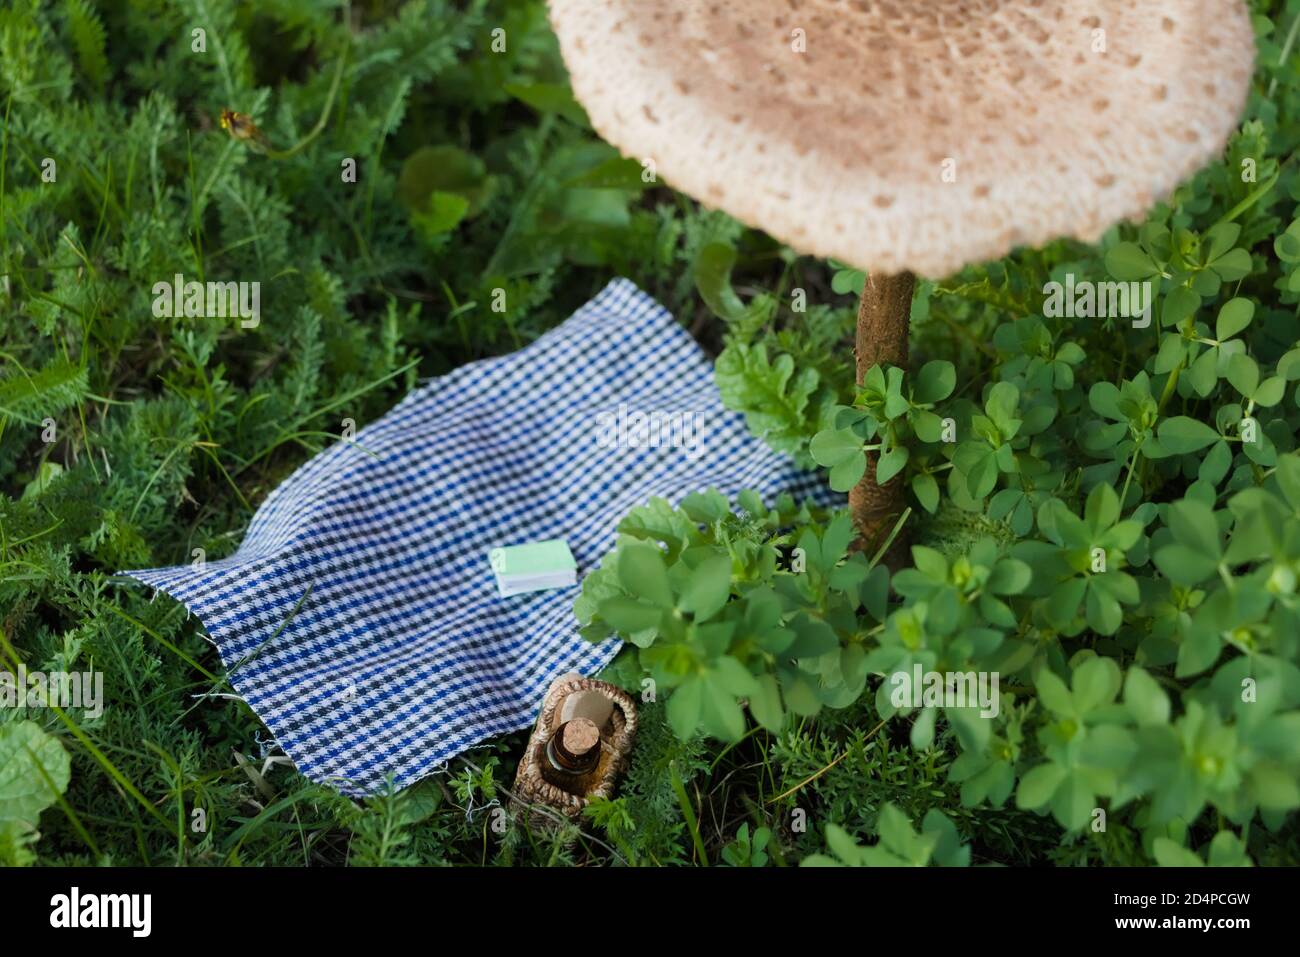 Hoja de picnic en miniatura colocada debajo de un hongo parasol (Macrolepiota procera) Foto de stock